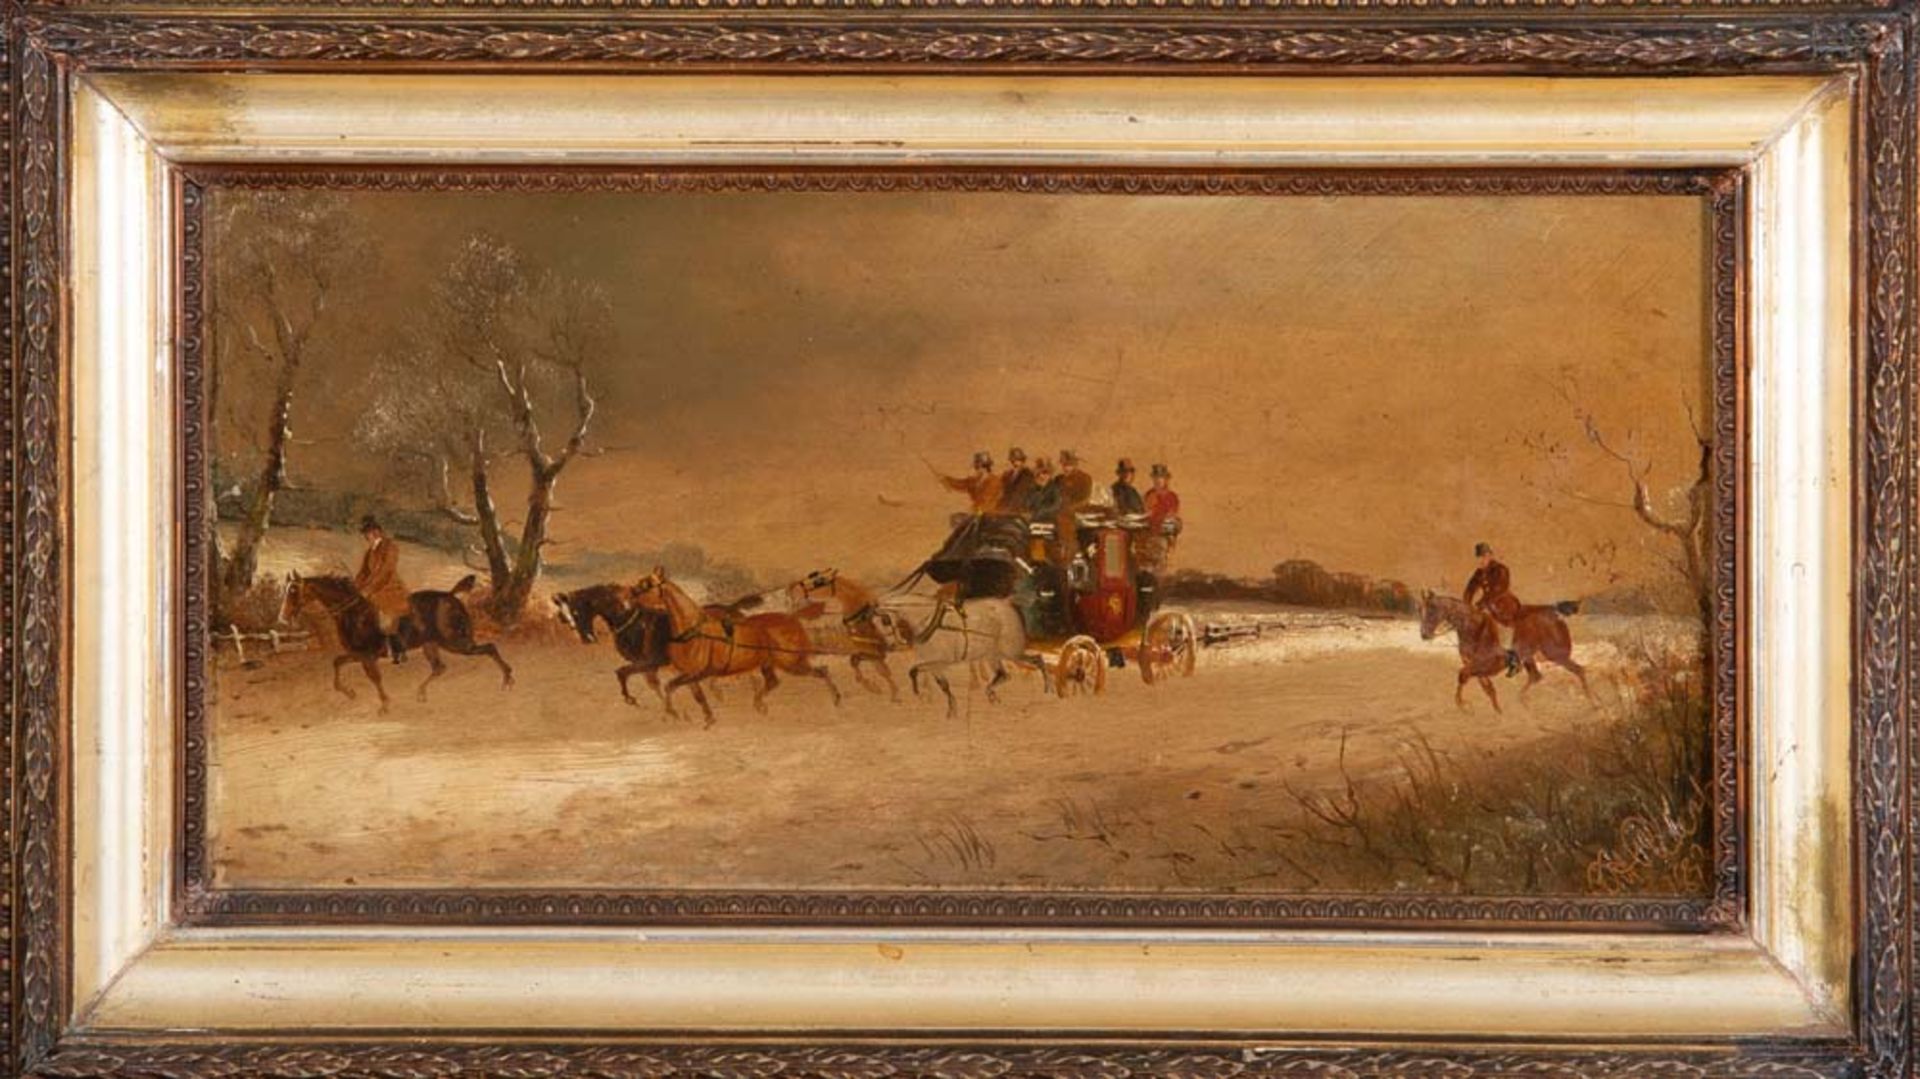 Maler des 19./20. Jhs. Winterlandschaft mit Pferdekutsche mit Personen, begleitet von Reitern. Öl/